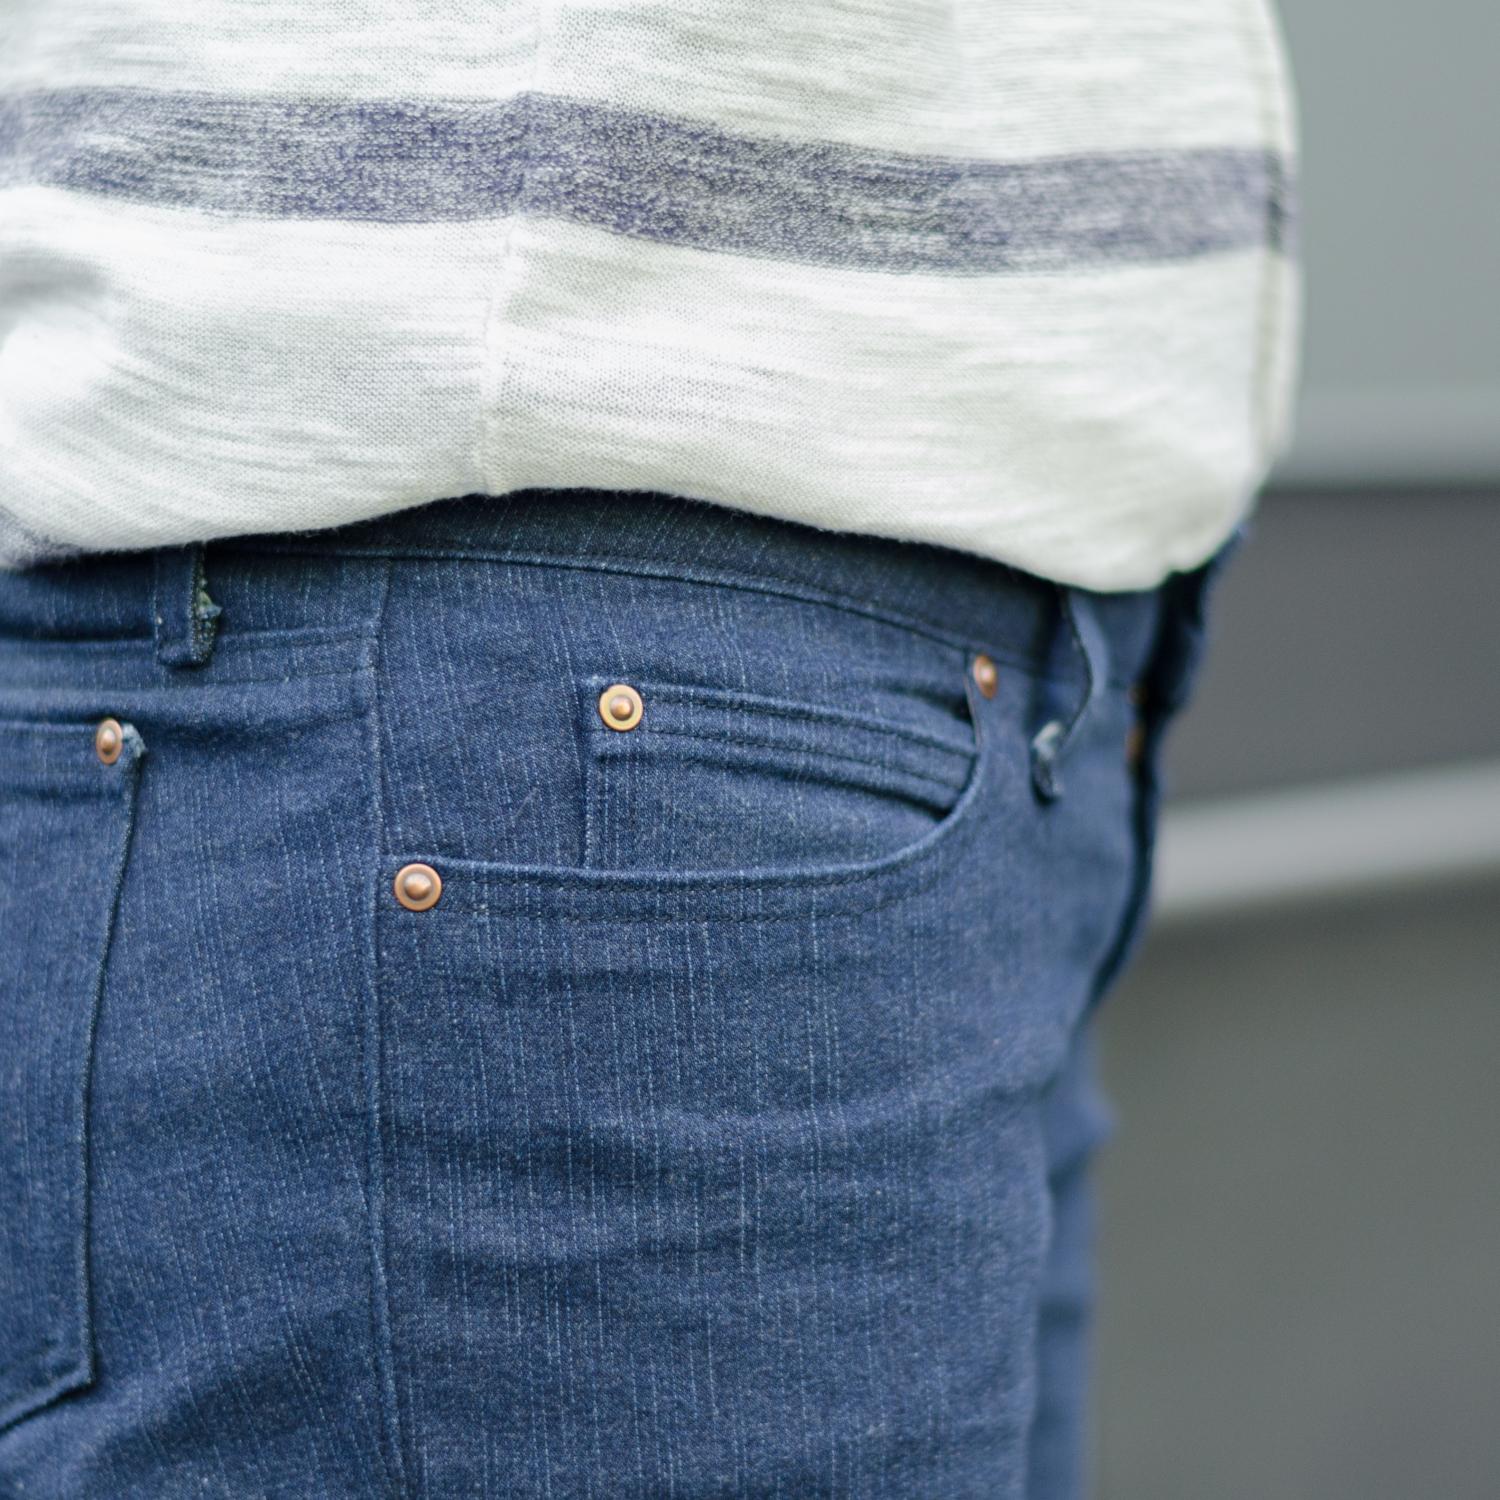 Jeans nähen, Schnittmuster Ginger Jeans von Closet Case Patterns, Vordertaschen und mit Münztasche (coin pocket)